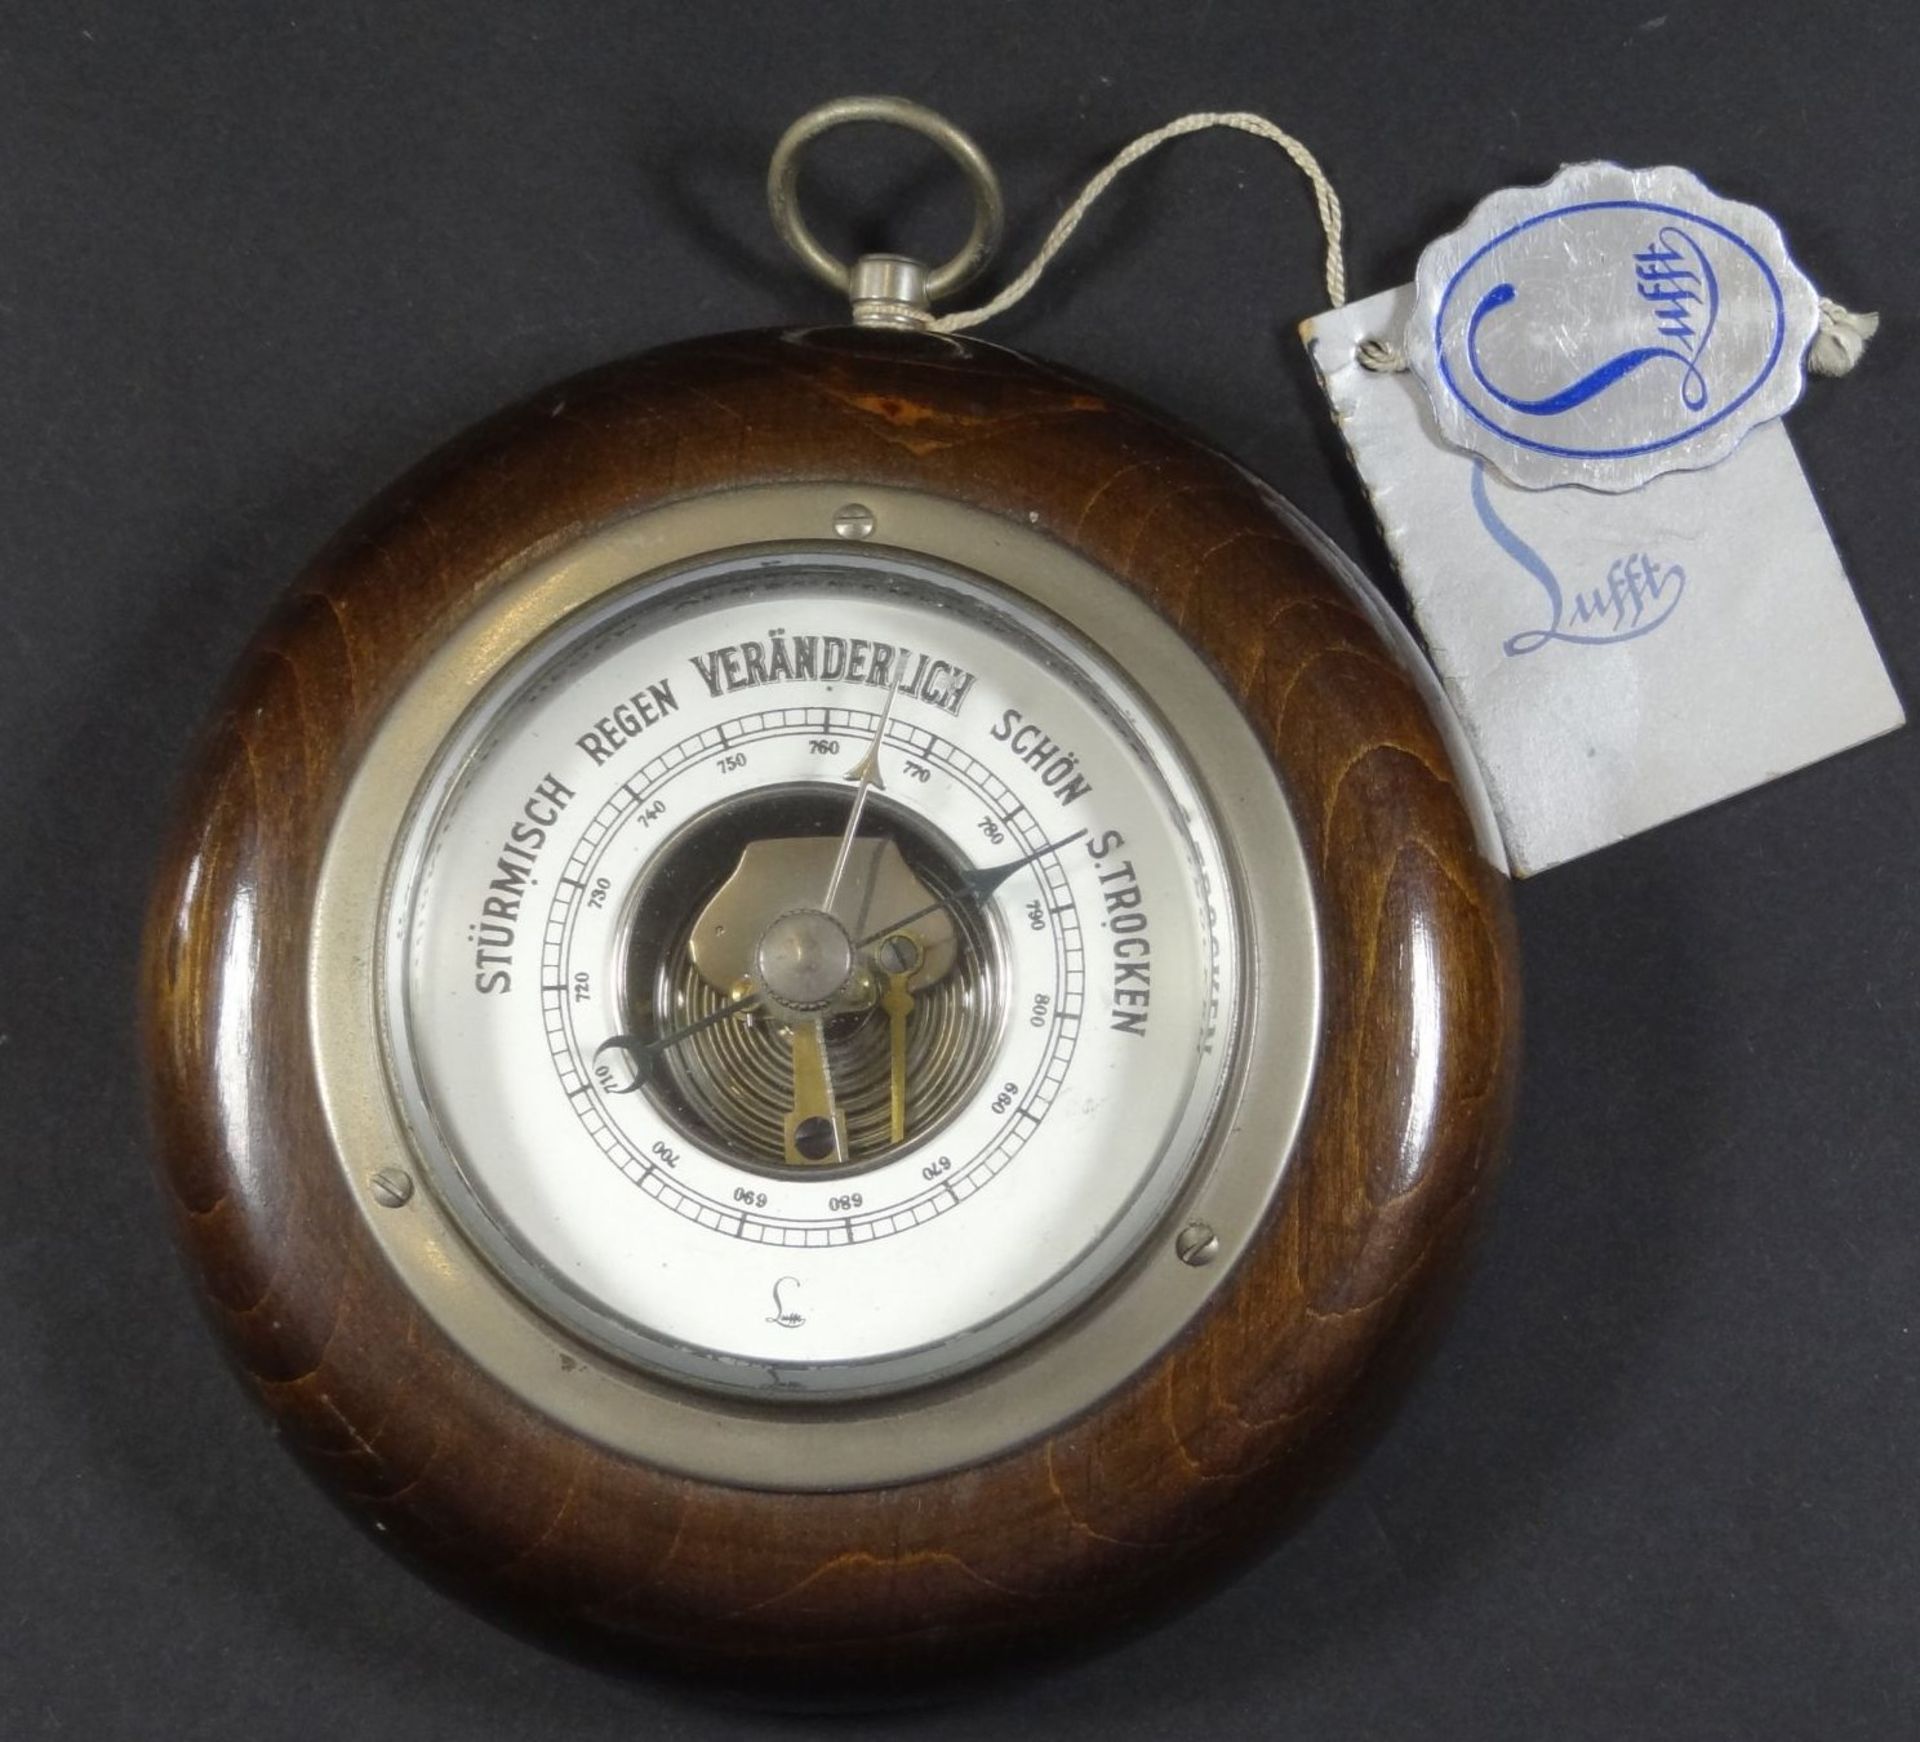 kl. Wandbarometer "Lufft" neuwertig, D-12 cm